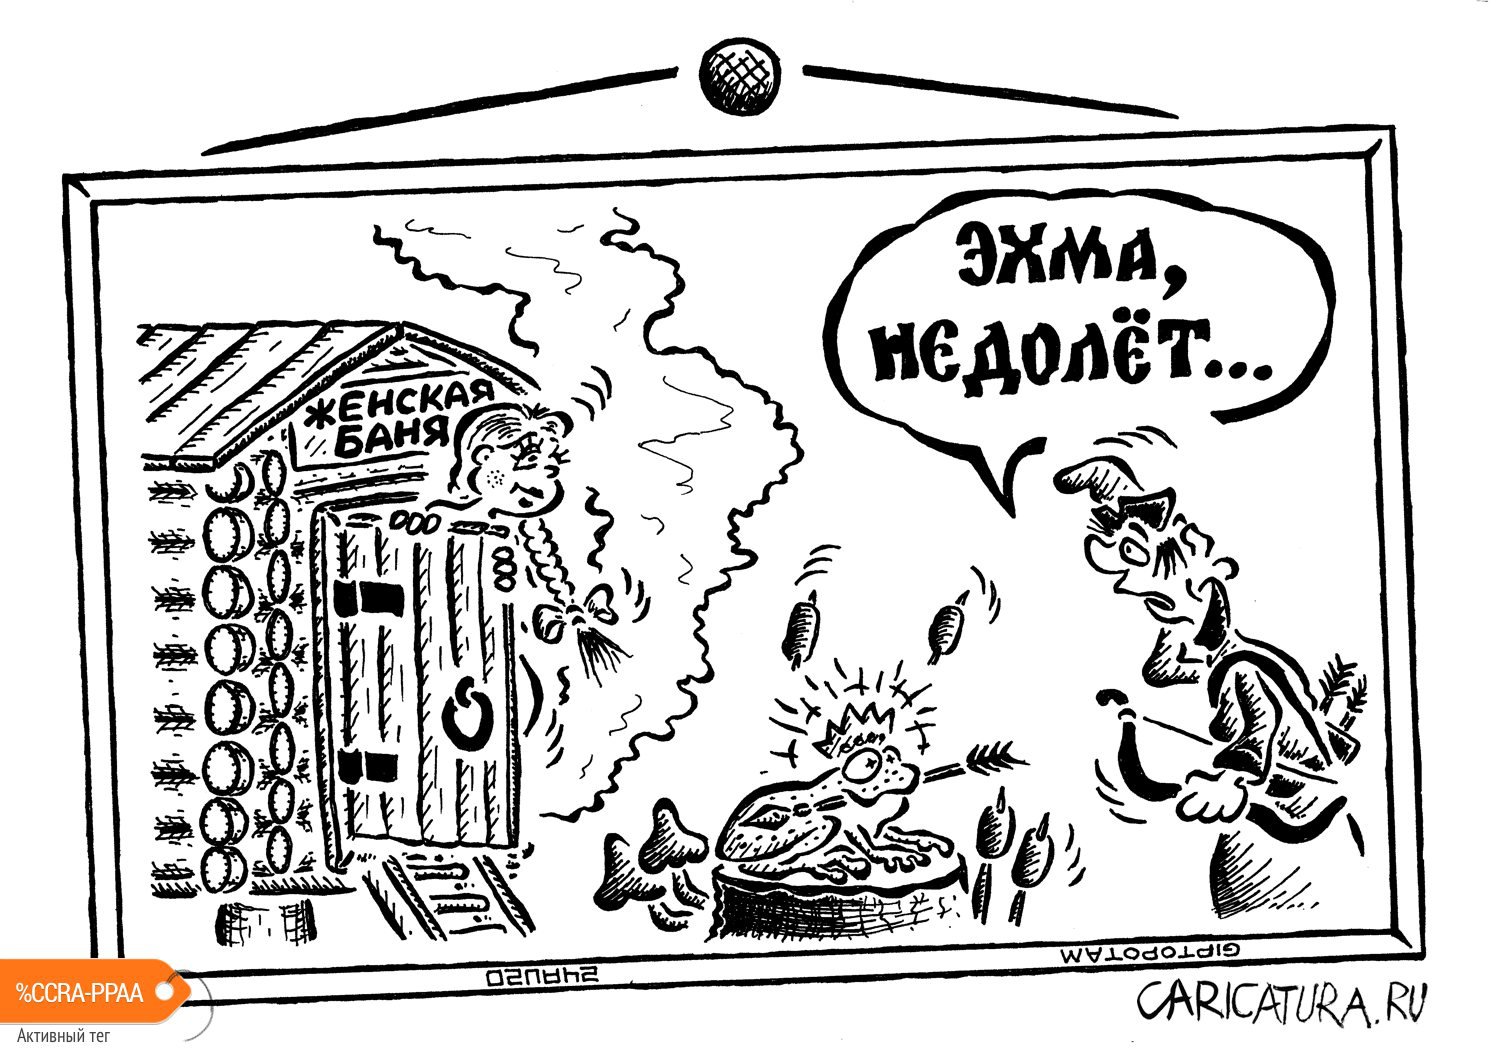 Карикатура "Сказка ложь, да в ней нам... ок!", Александр Евангелистов